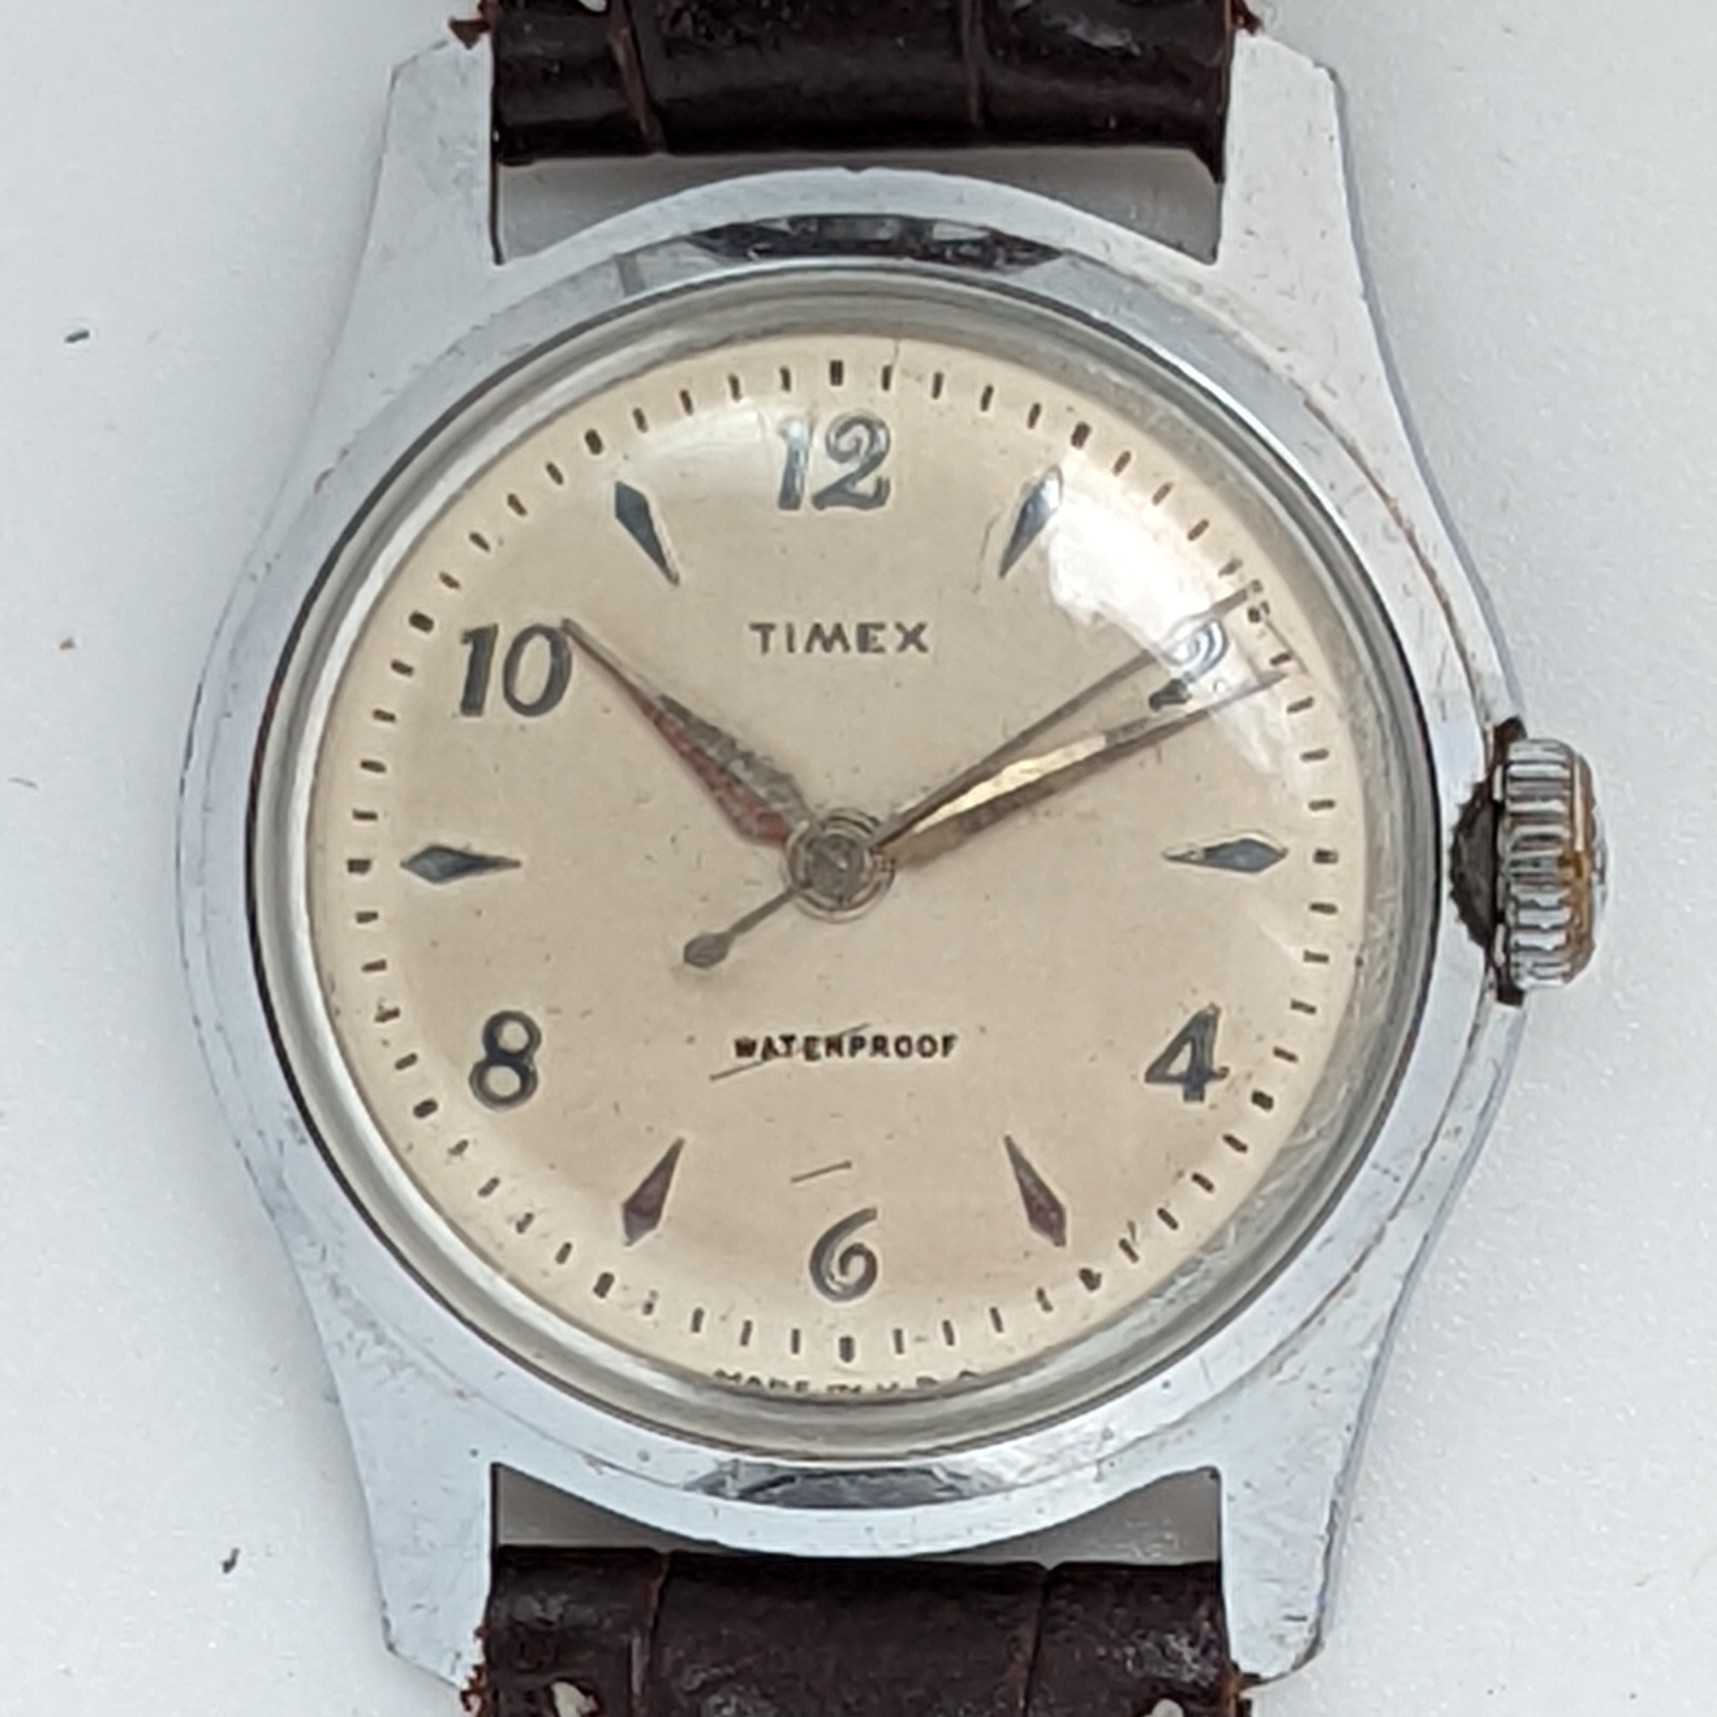 Timex Marlin 2010 2257 [1957]